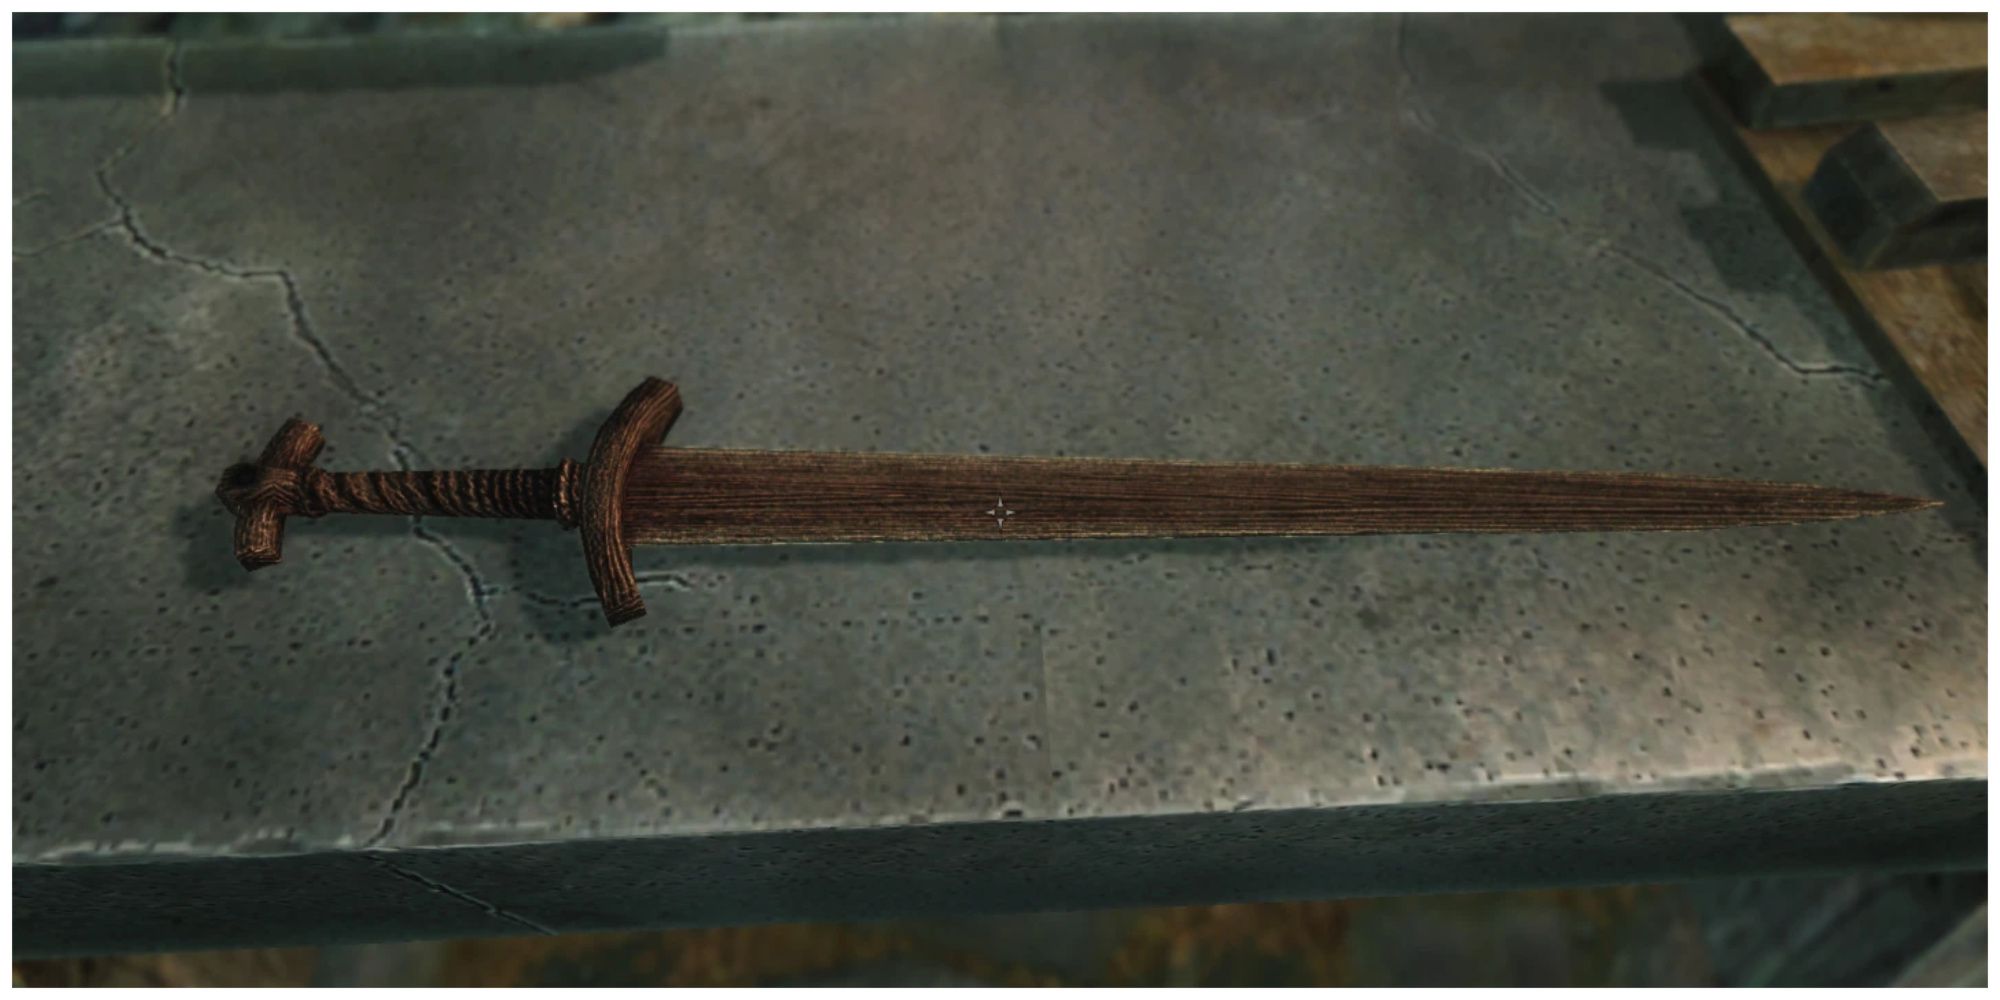 skyrim wooden sword